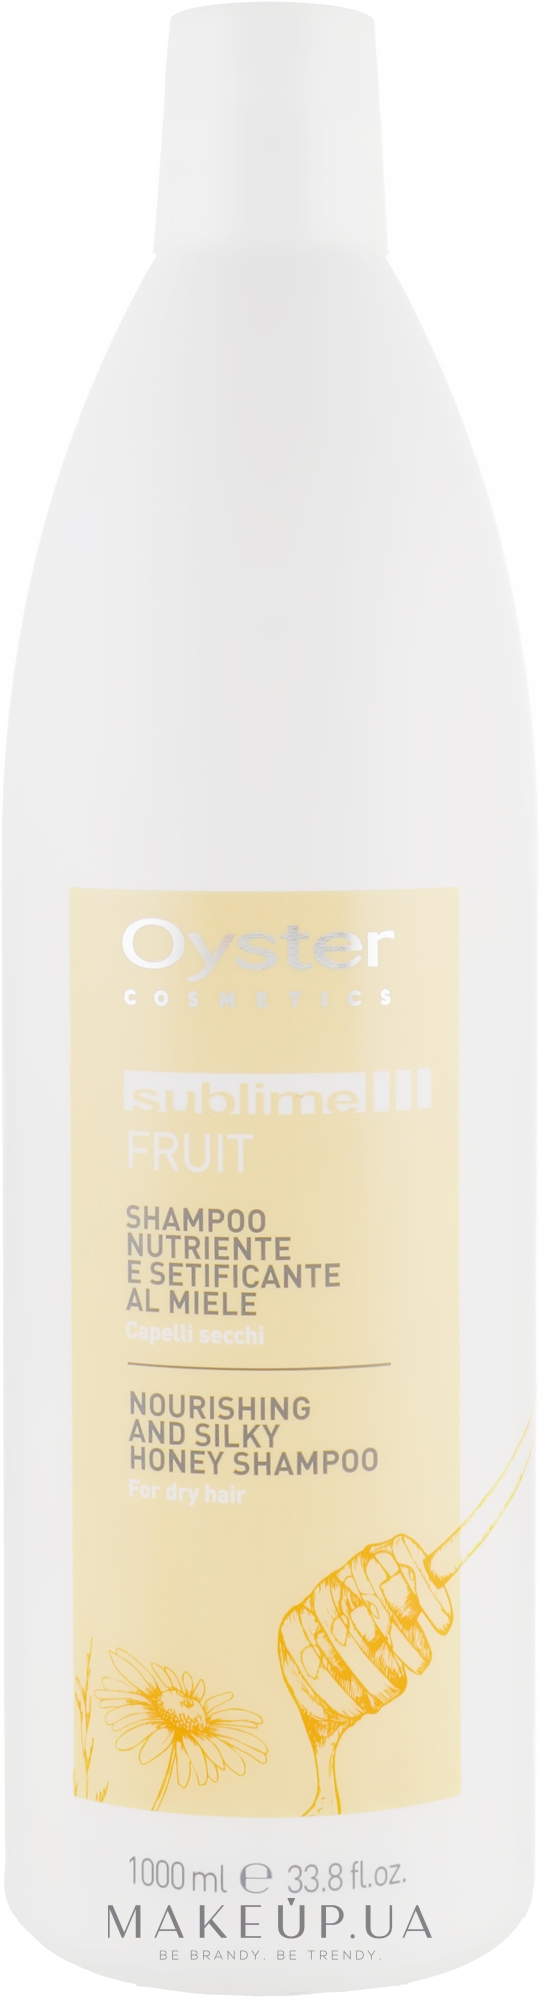 Шампунь для волос с экстрактом меда - Oyster Cosmetics Sublime Fruit Shampoo — фото 1000ml